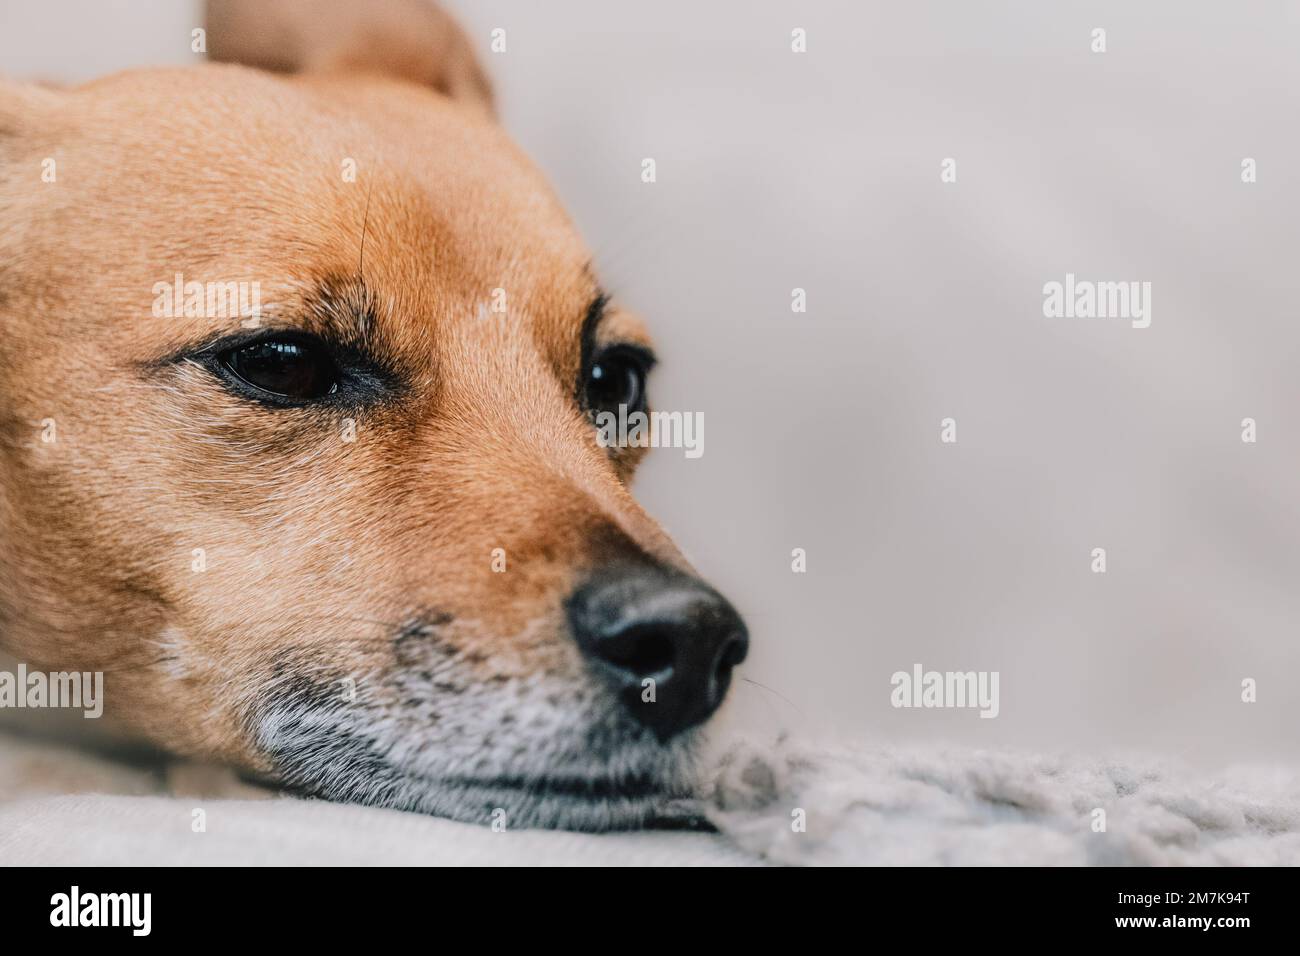 Adorabile e carino ritratto del cane Jack Russell Terrier. Colpo di testa di un cane da fotografia di un cane fotografa. Foto Stock